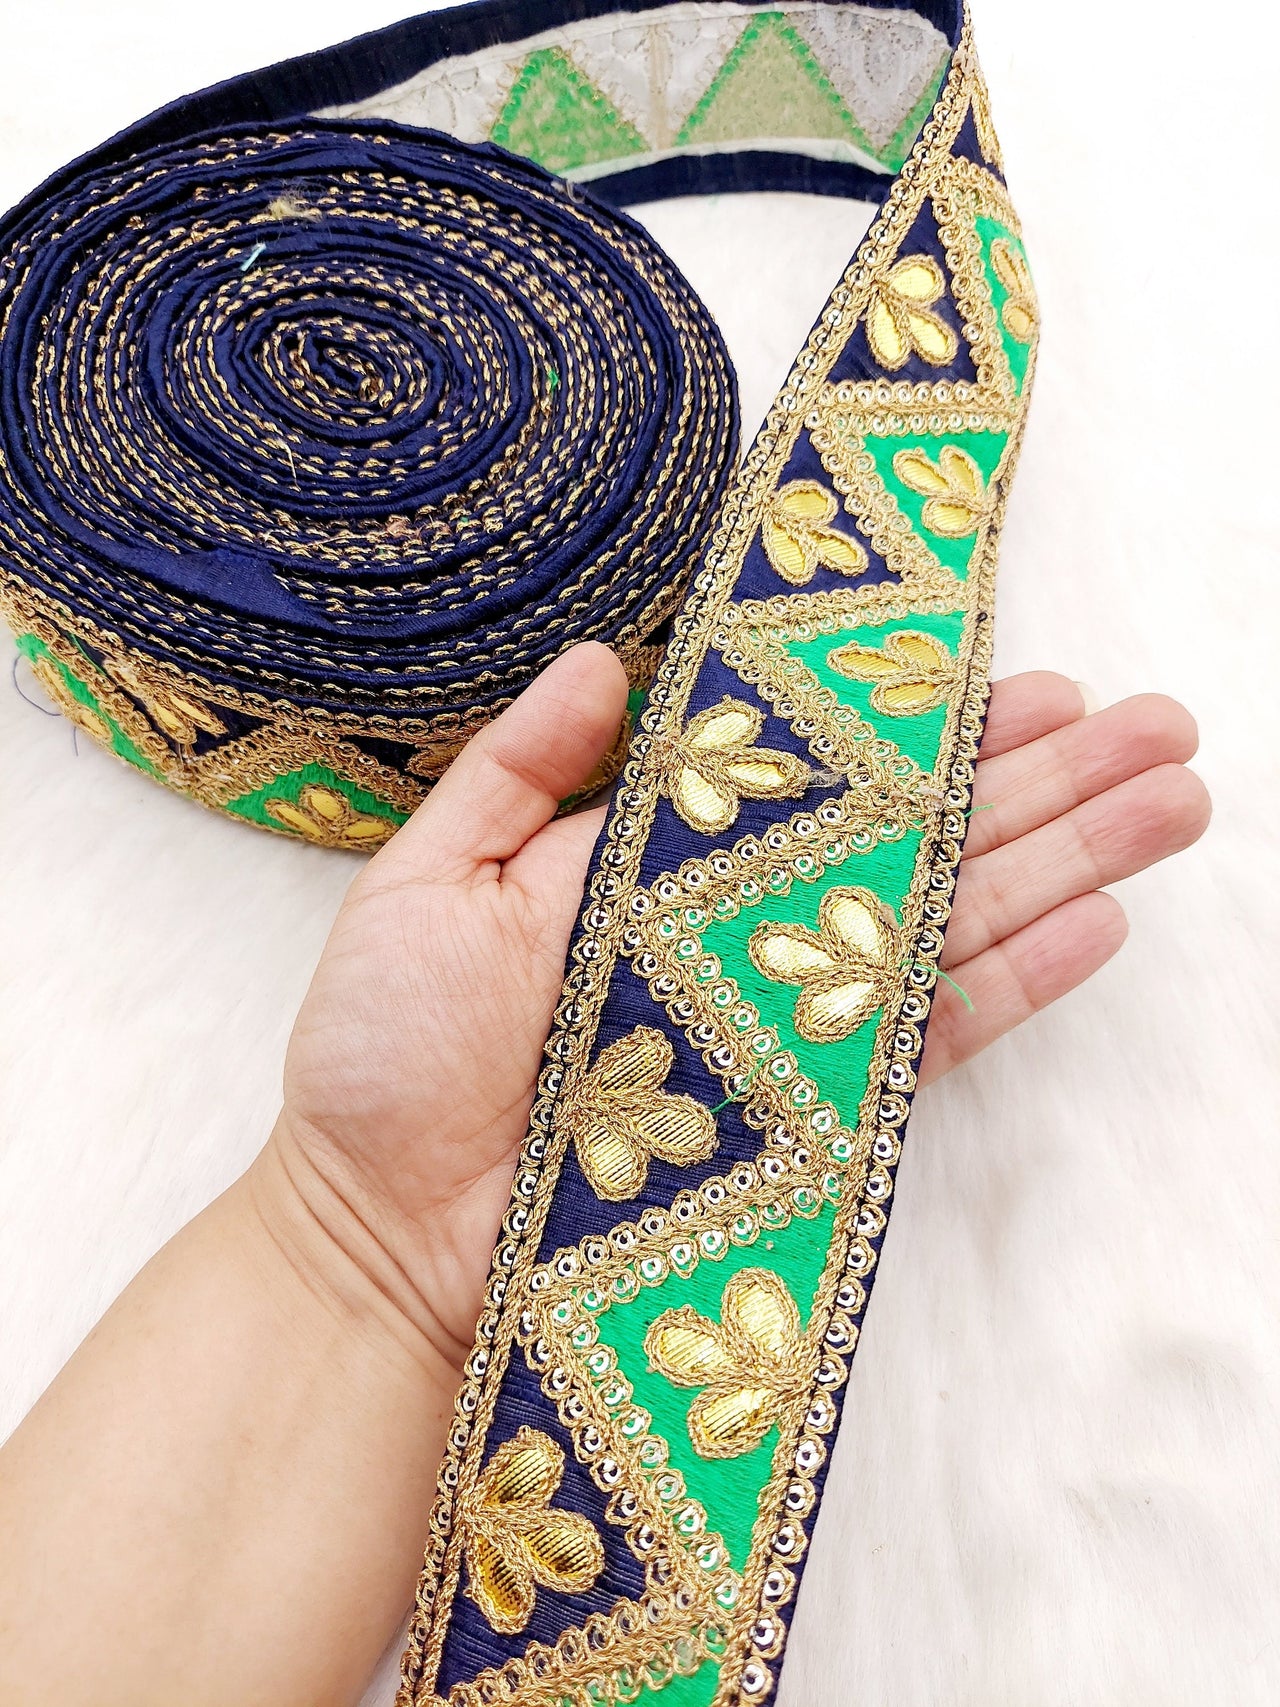 Silk Fabric Trim, Gold Gota Patti Indian Sari Border Trim By Yard Decorative Trim Craft Lace, Two Colour Trim